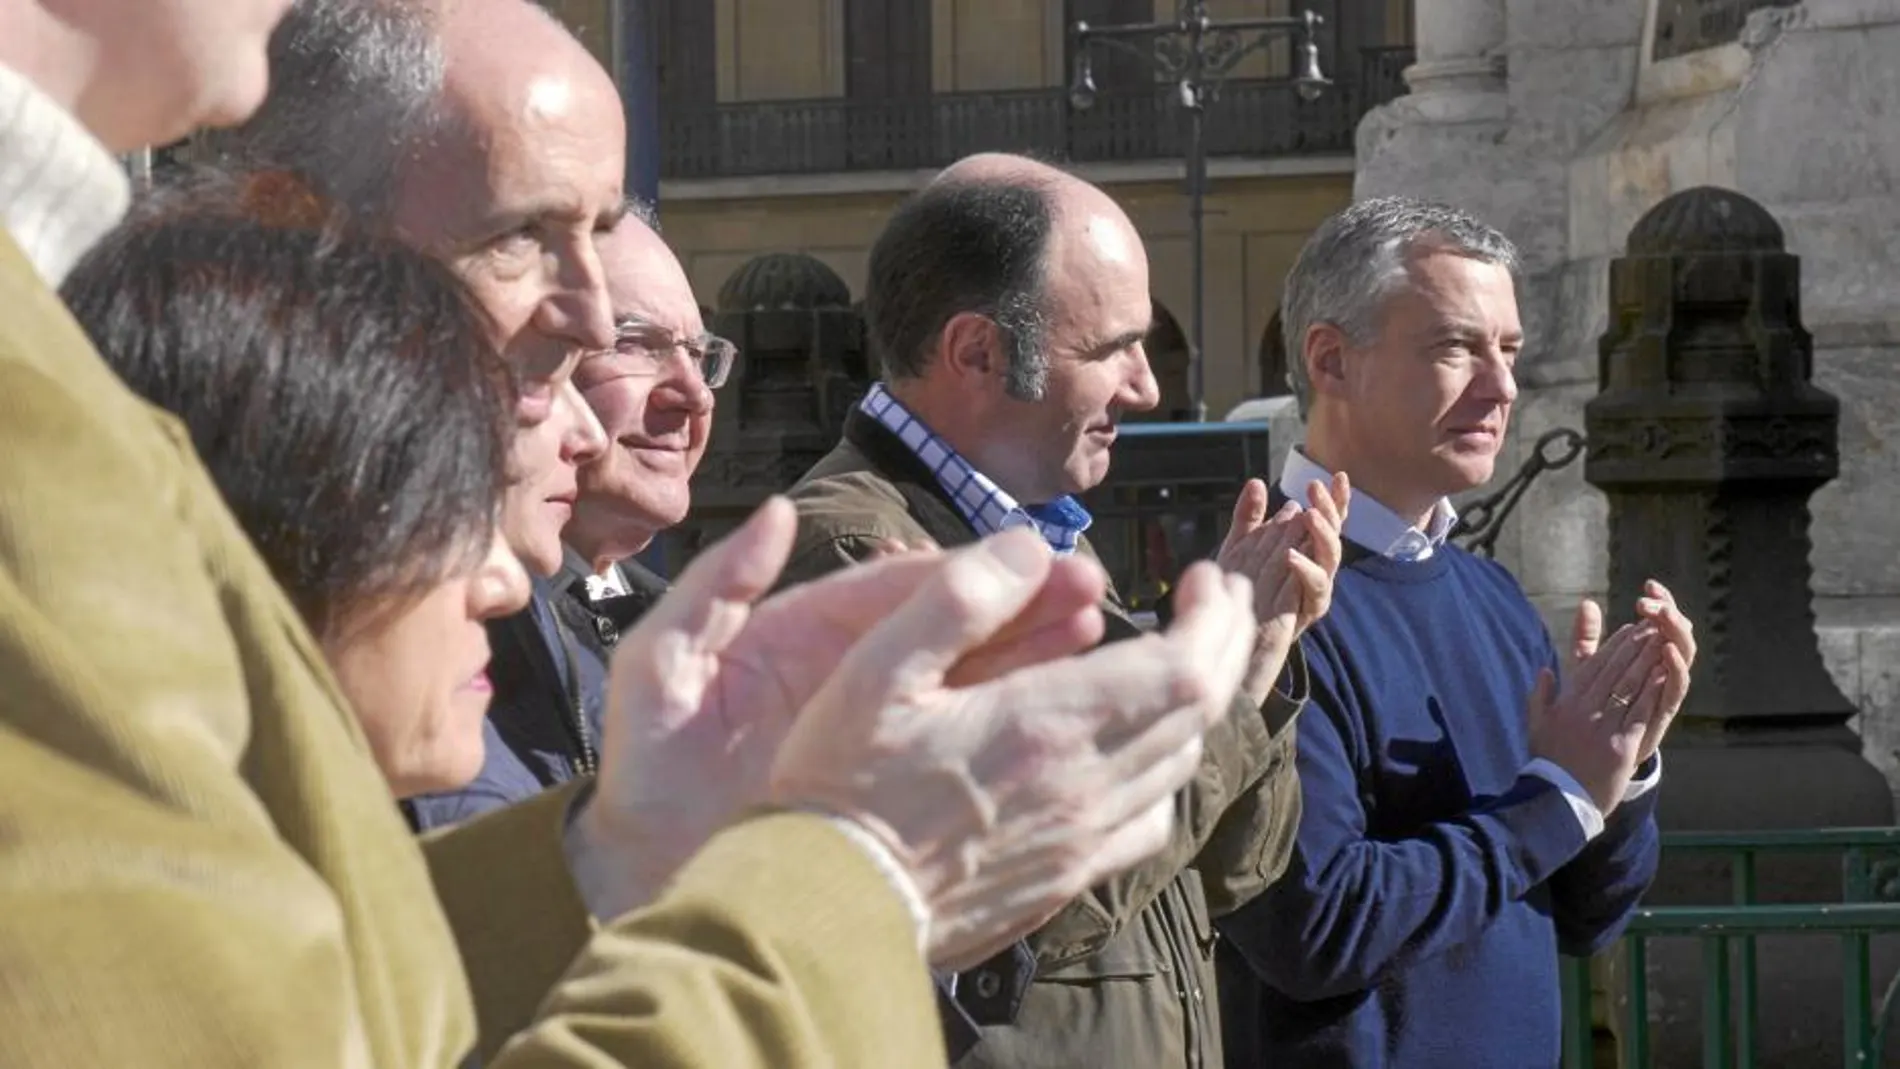 El lendakari, Íñigo Urkullu, junto al vicepresidente económico del Gobierno de Navarra, Manu Ayerdi, entre otros, durante la asamblea general del PNV celebrada ayer ante el Monumento a los Fueros de Navarra en Pamplona